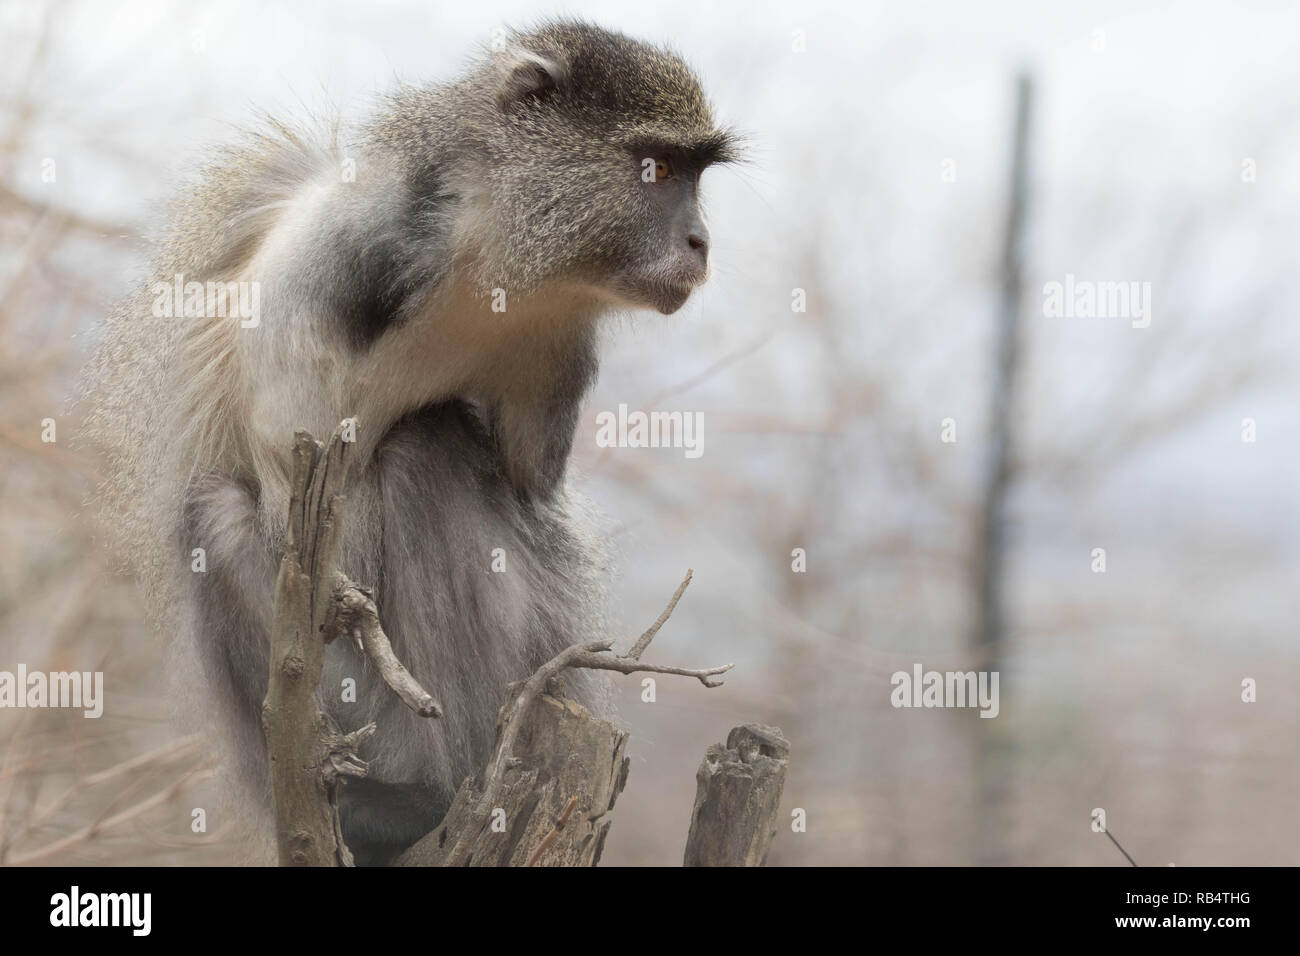 Strappalacrime foto e riprese video hanno catturato una scimmia senza braccioli la riproduzione dopo aver le sue braccia amputate a causa di lesioni da elettrocuzione. Th Foto Stock